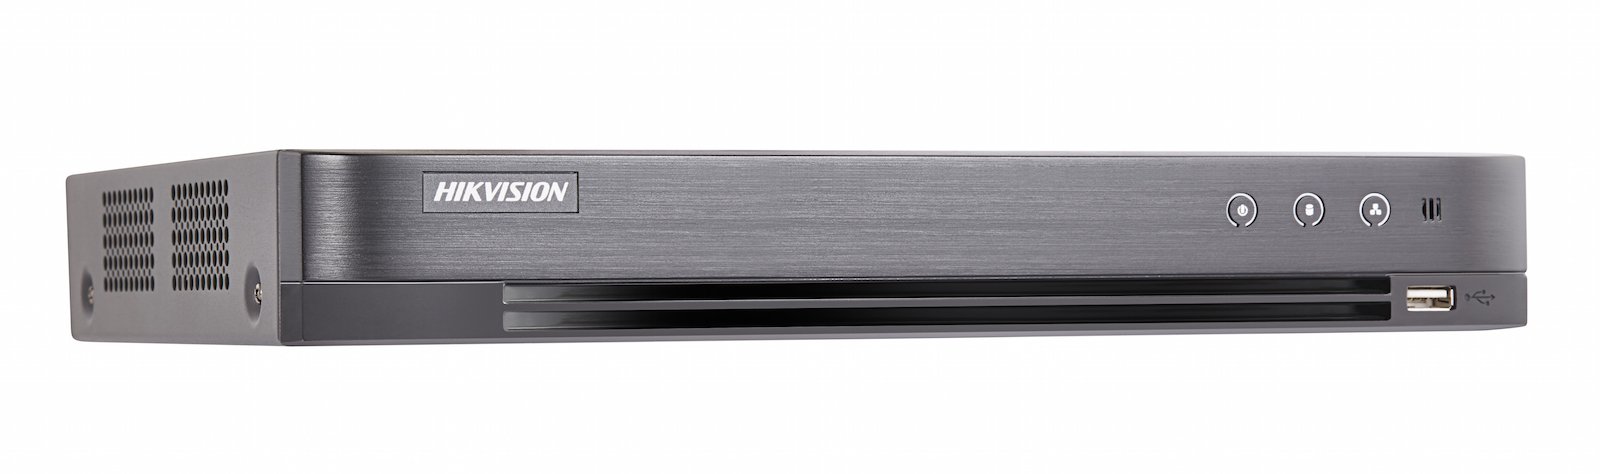 Hikvision DS-7208HUHI-K2/P 8-канальный Turbo HD видеорегистратор с поддержкой POC